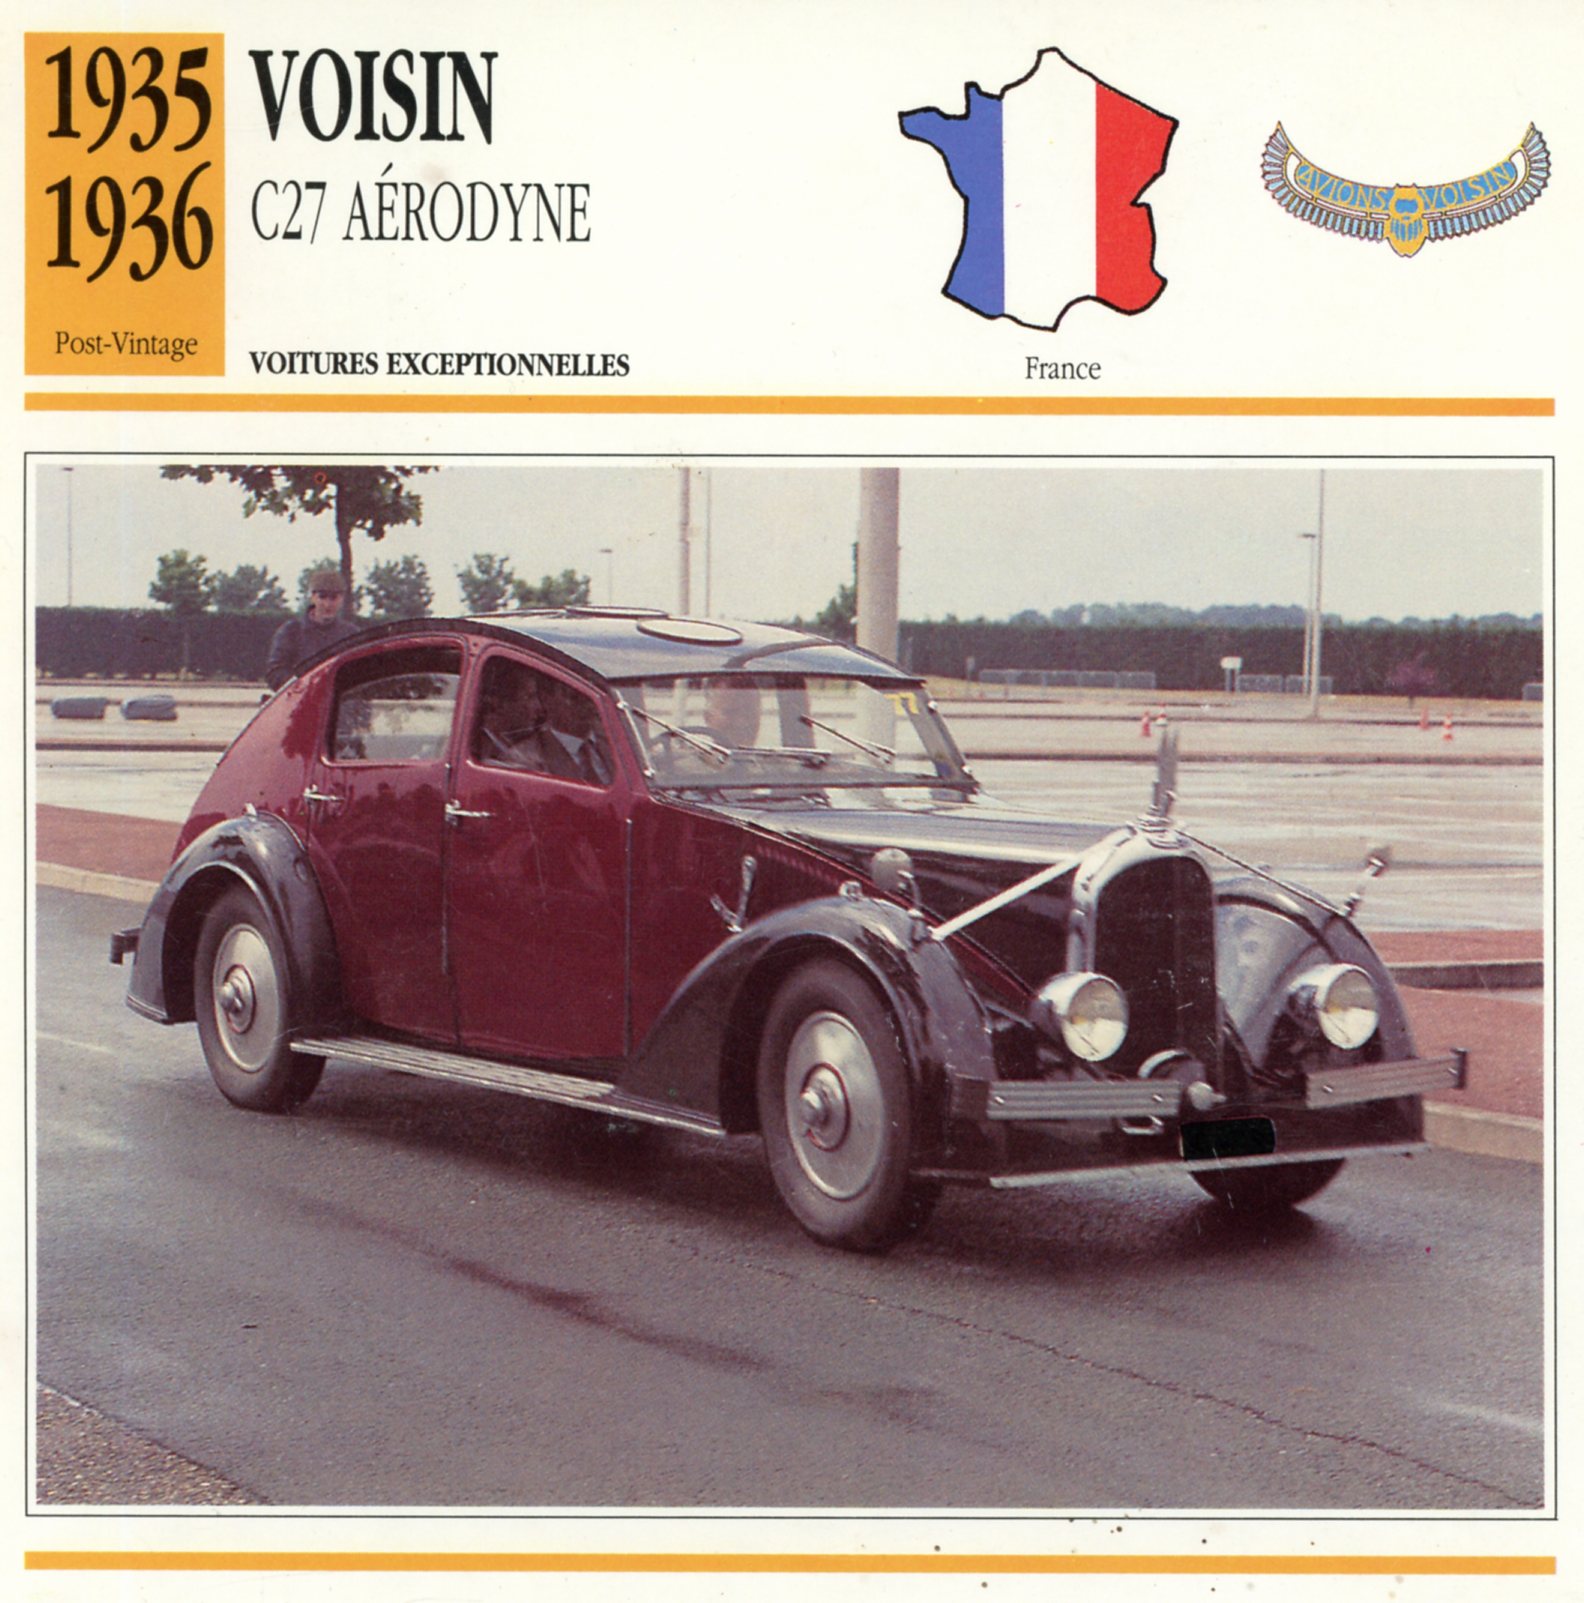 FICHE-AUTO-VOISIN-C27-AÉRODYNE -1935-LEMASTERBROCKERS-CARS-CARD-ATLAS